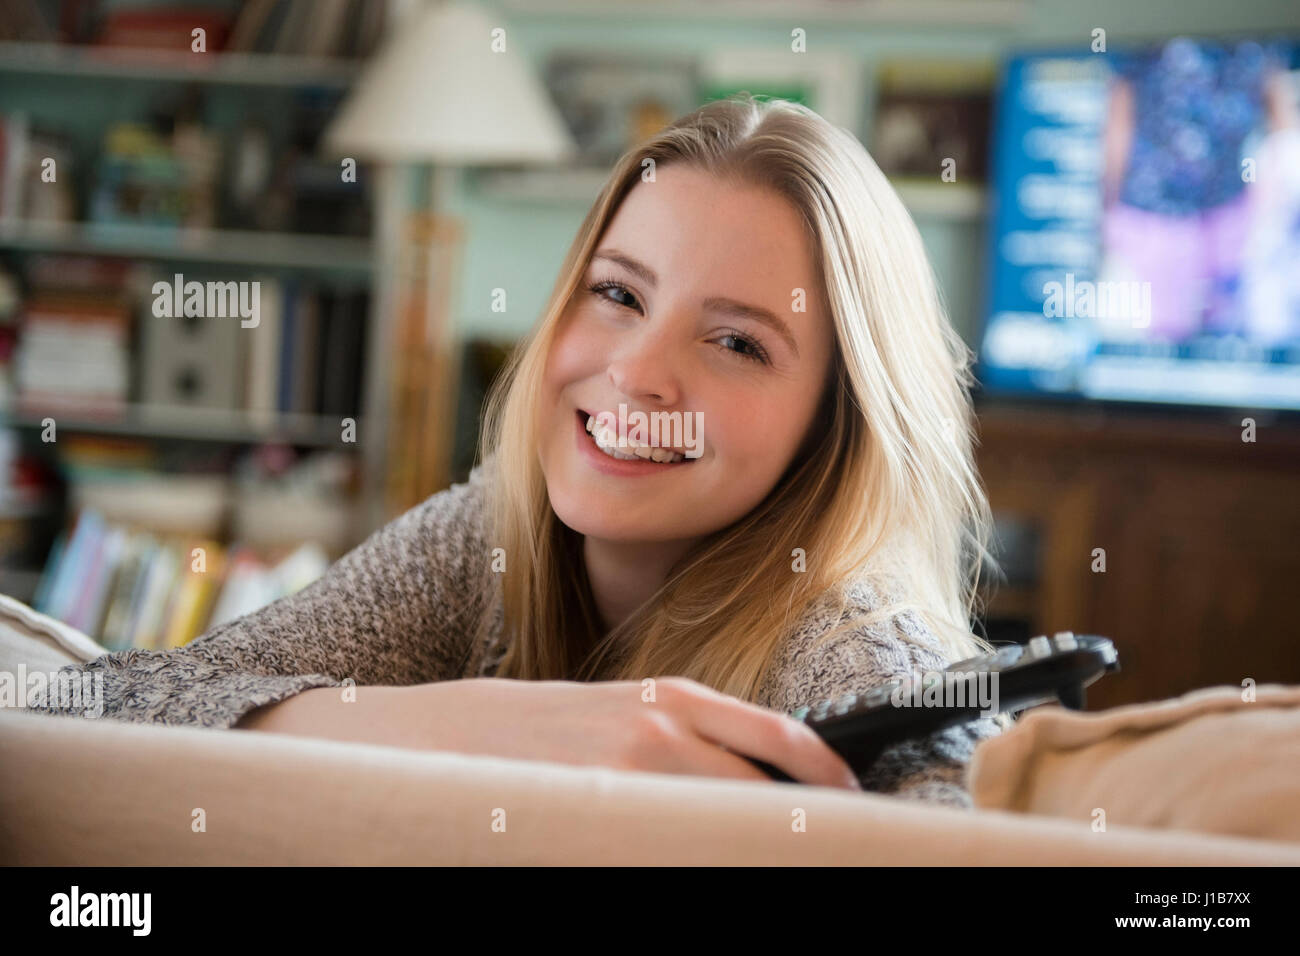 Donna sorridente appoggiata sul divano holding di controllo remoto Foto Stock